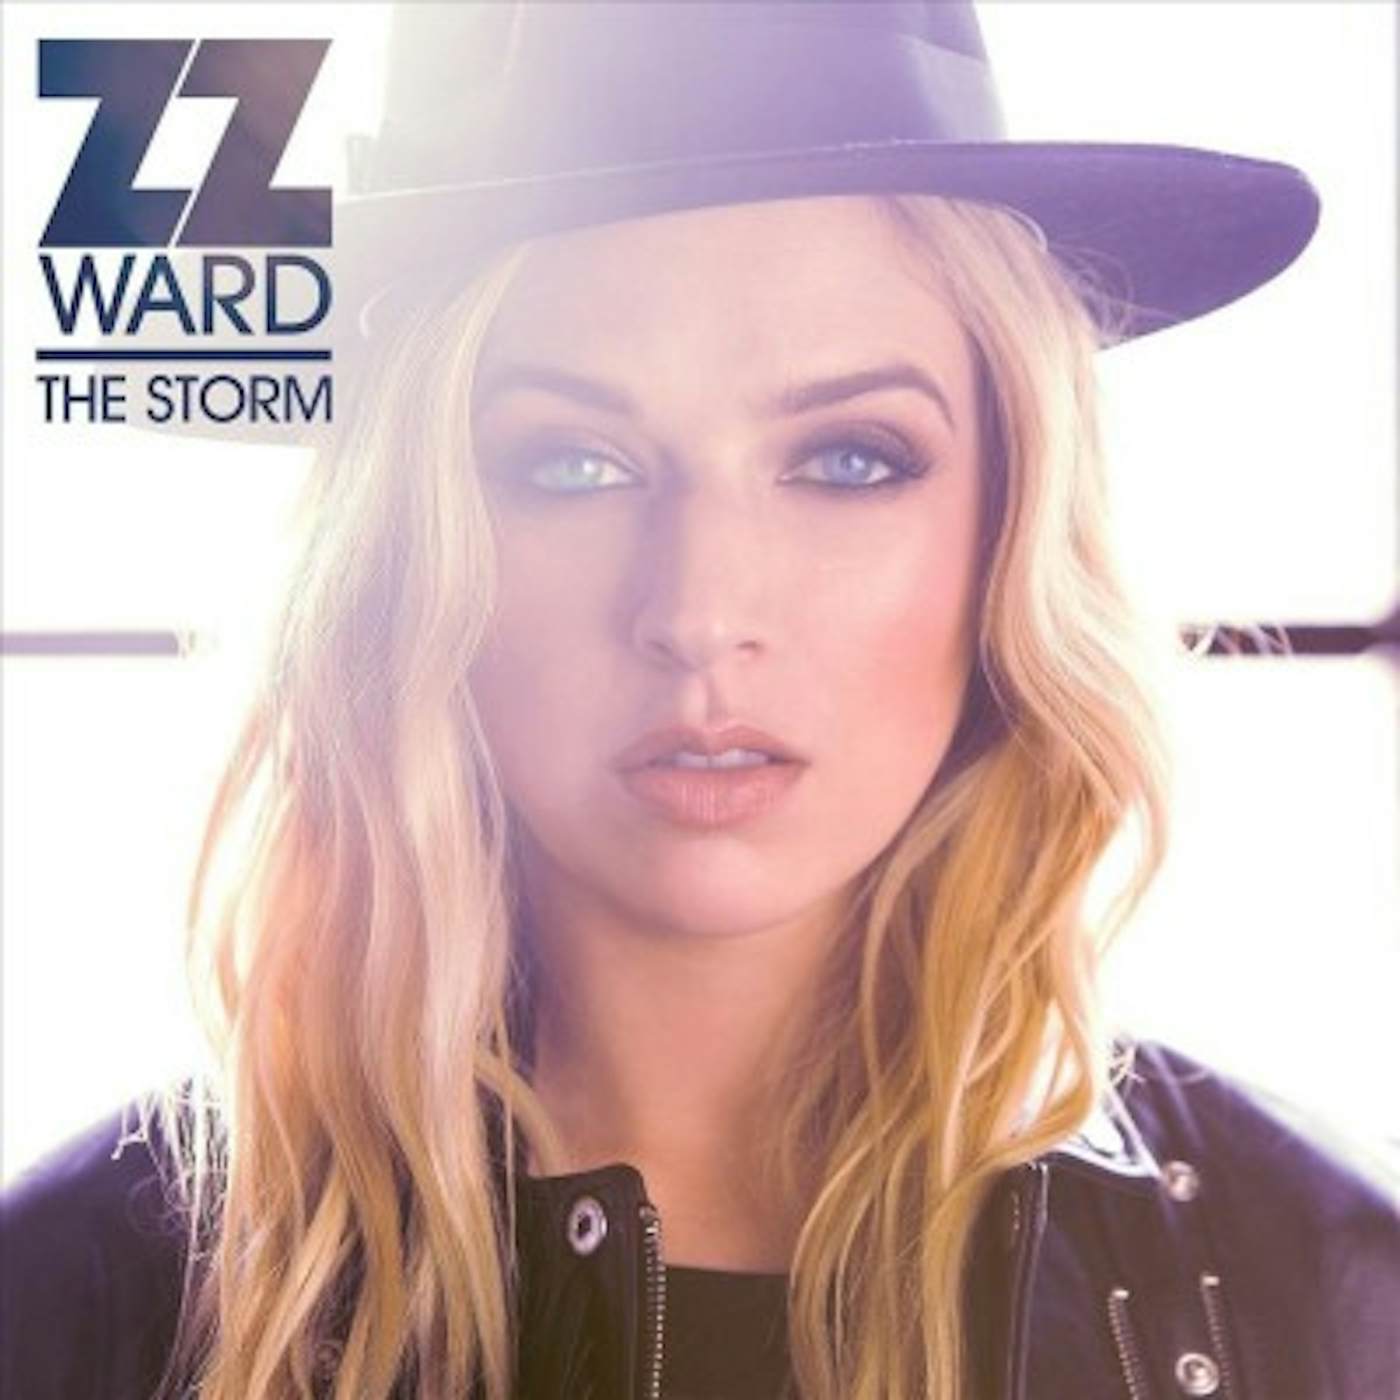 ZZ Ward Storm Vinyl Record